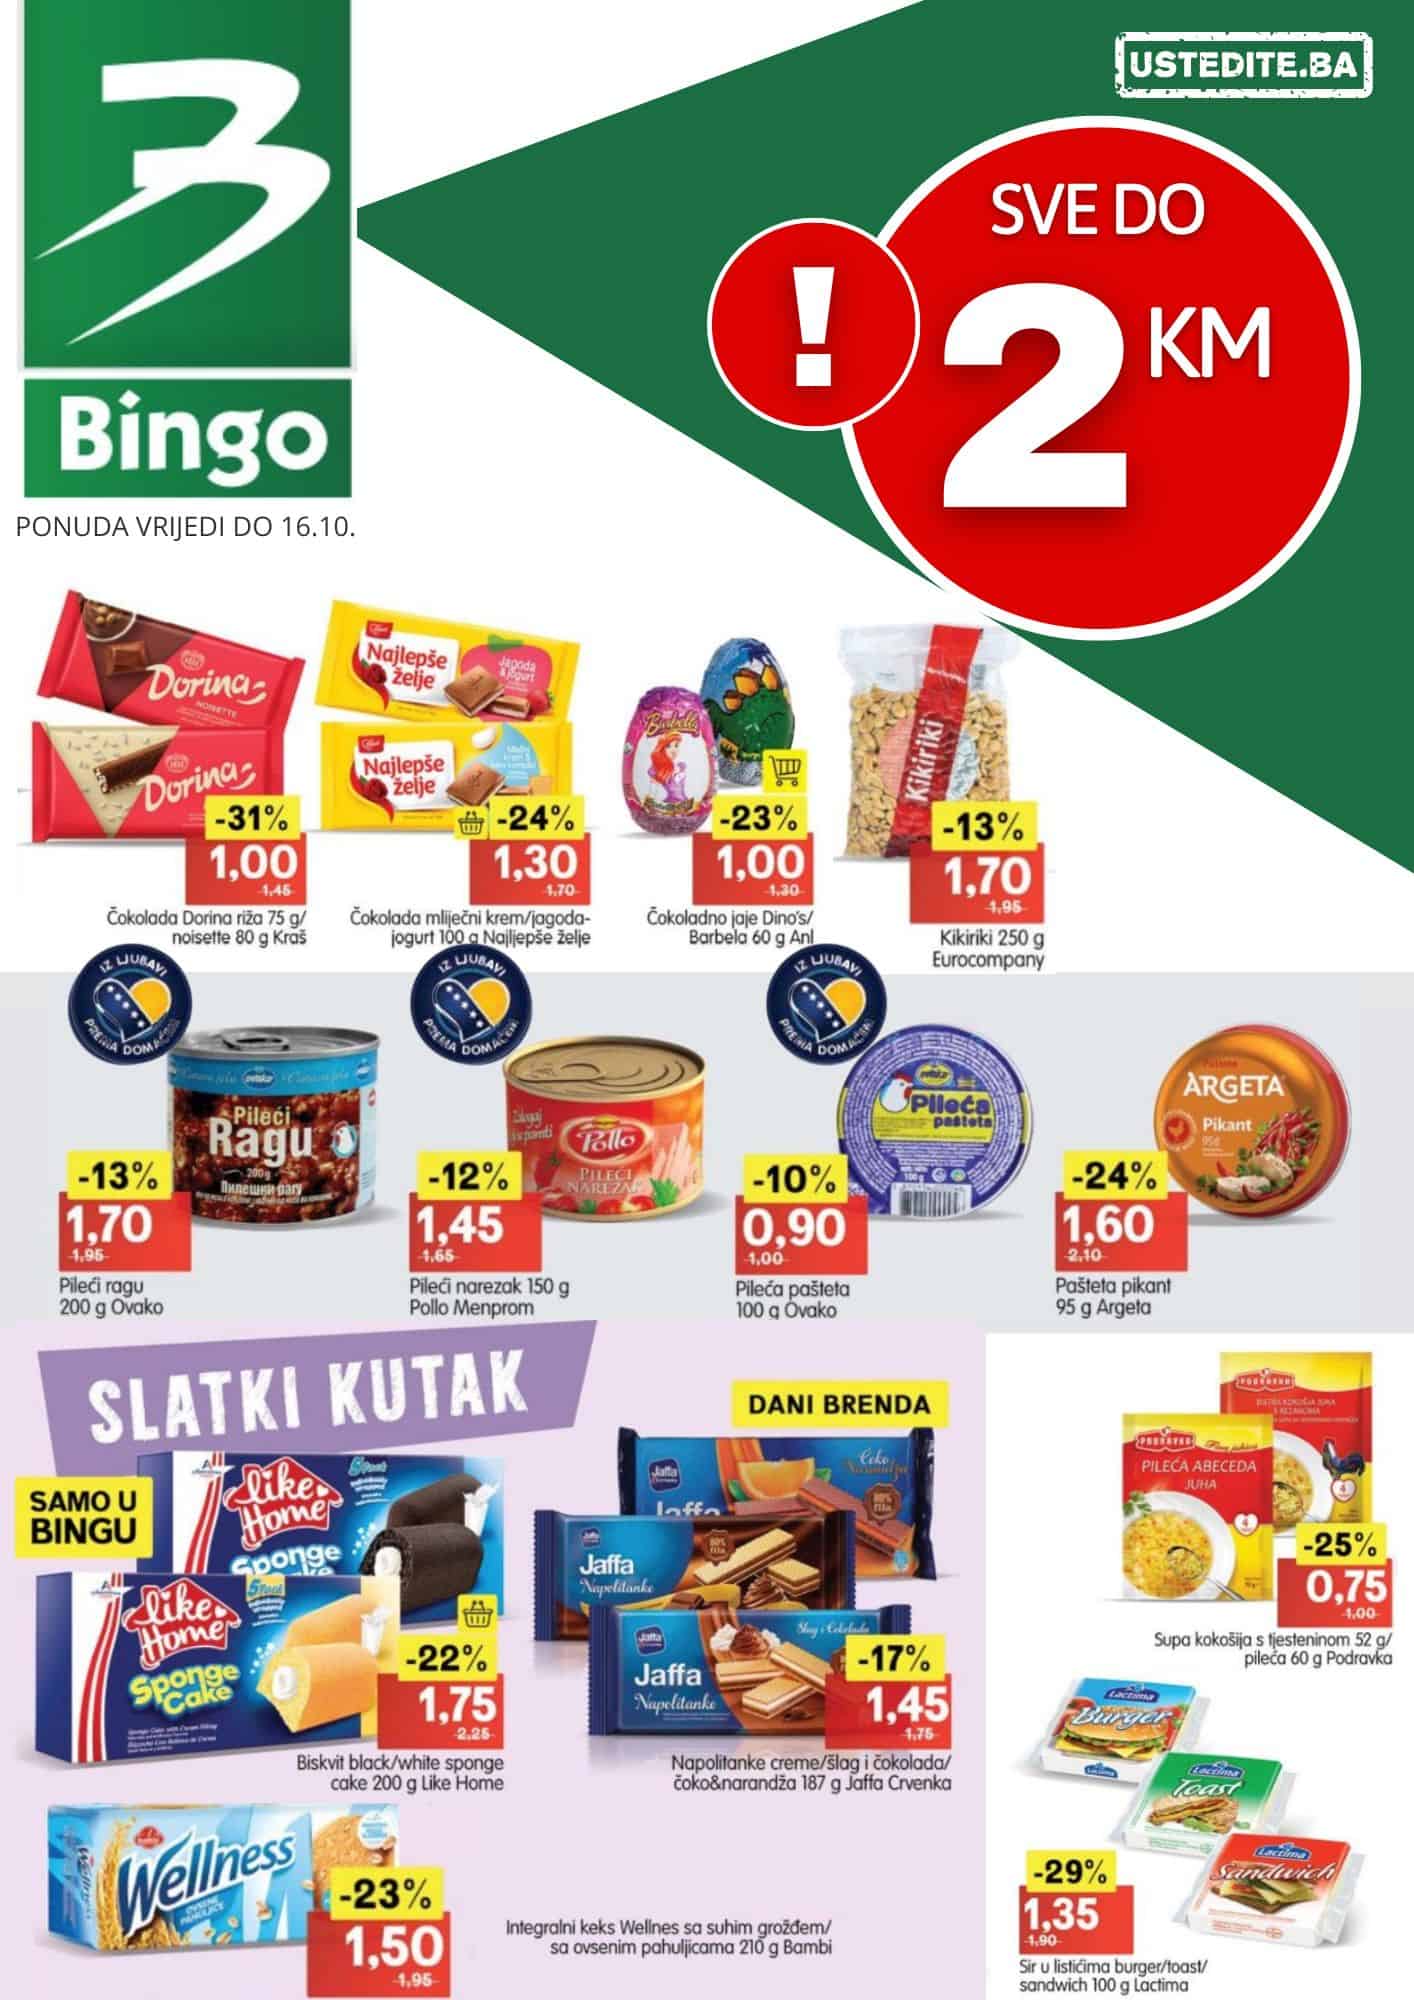 Bingo SVE DO 2 KM - akcija do 16.10.2022.